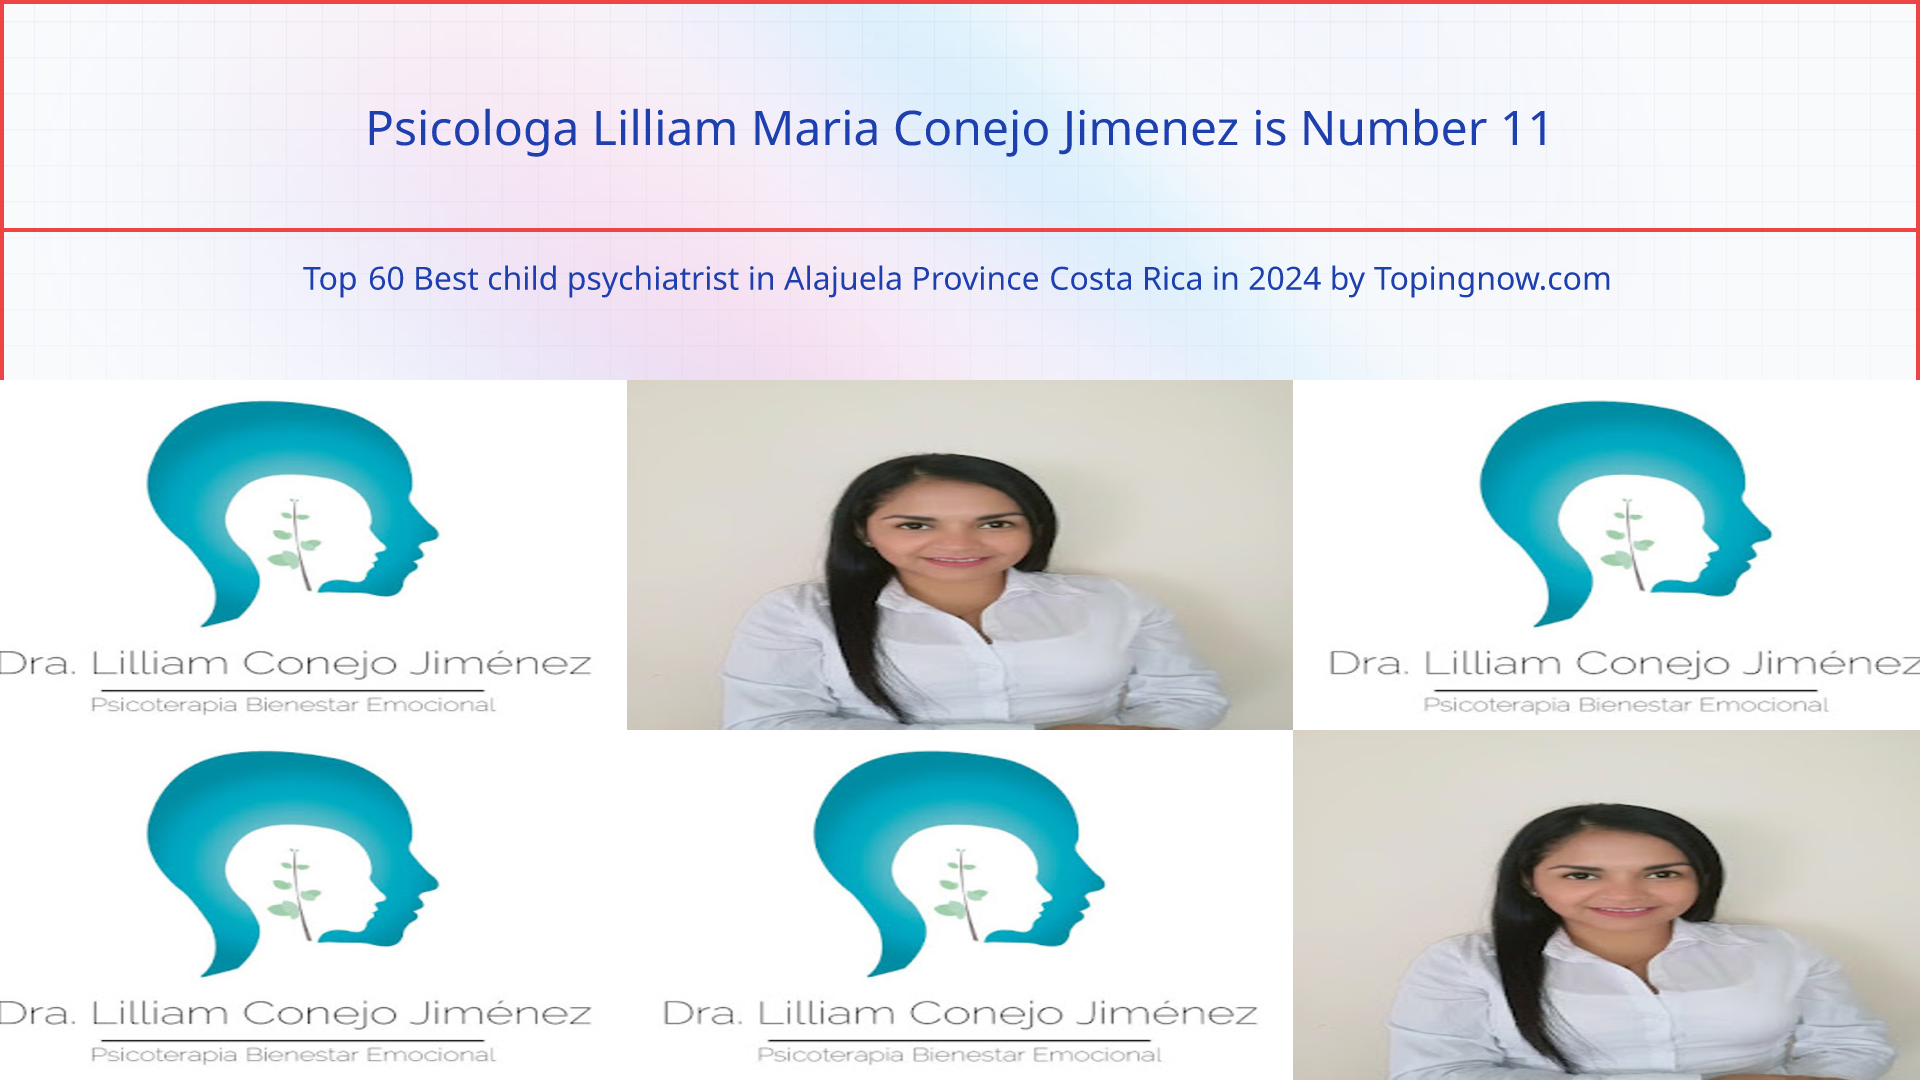 Psicologa Lilliam Maria Conejo Jimenez: Top 60 Best child psychiatrist in Alajuela Province Costa Rica in 2024